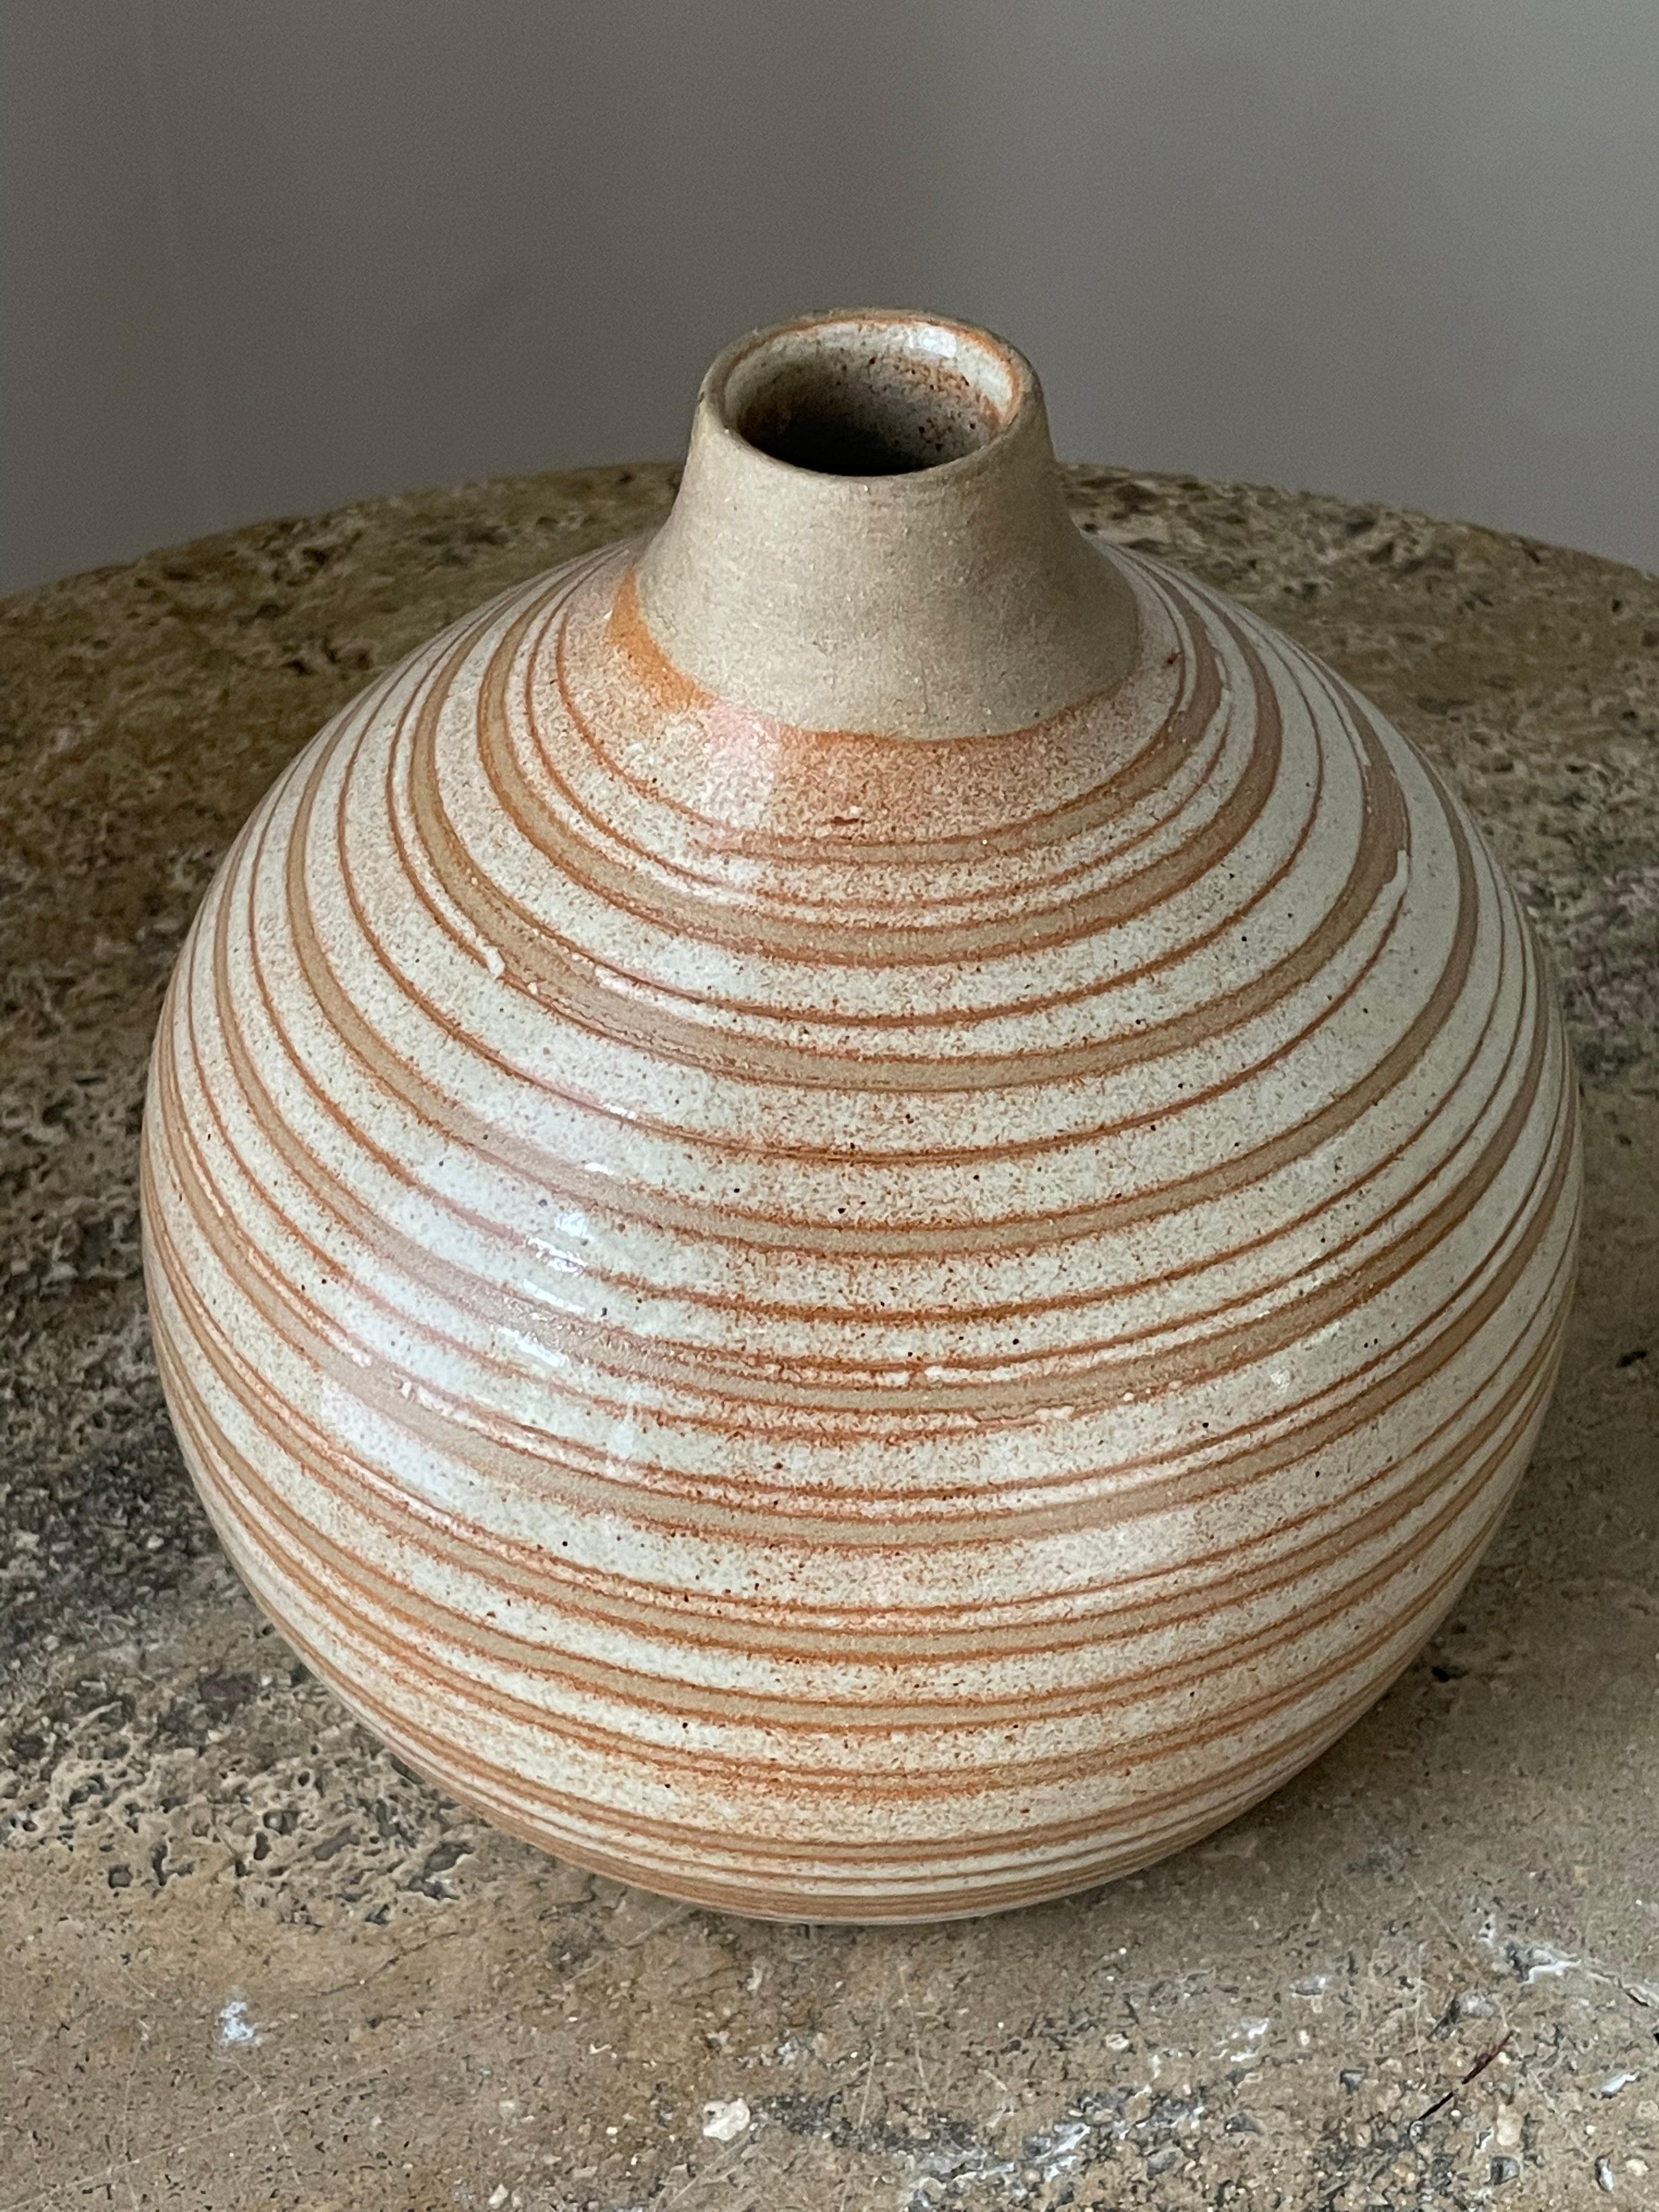 Un grand vase rond conçu par Jane et Gordon Martz pour les studios Marshall. Célèbre pour ses lampes de table en céramique très recherchées, cette collection propose un vase en céramique. Merveilleuse palette de couleurs rose/ blush/ tan. Très bon